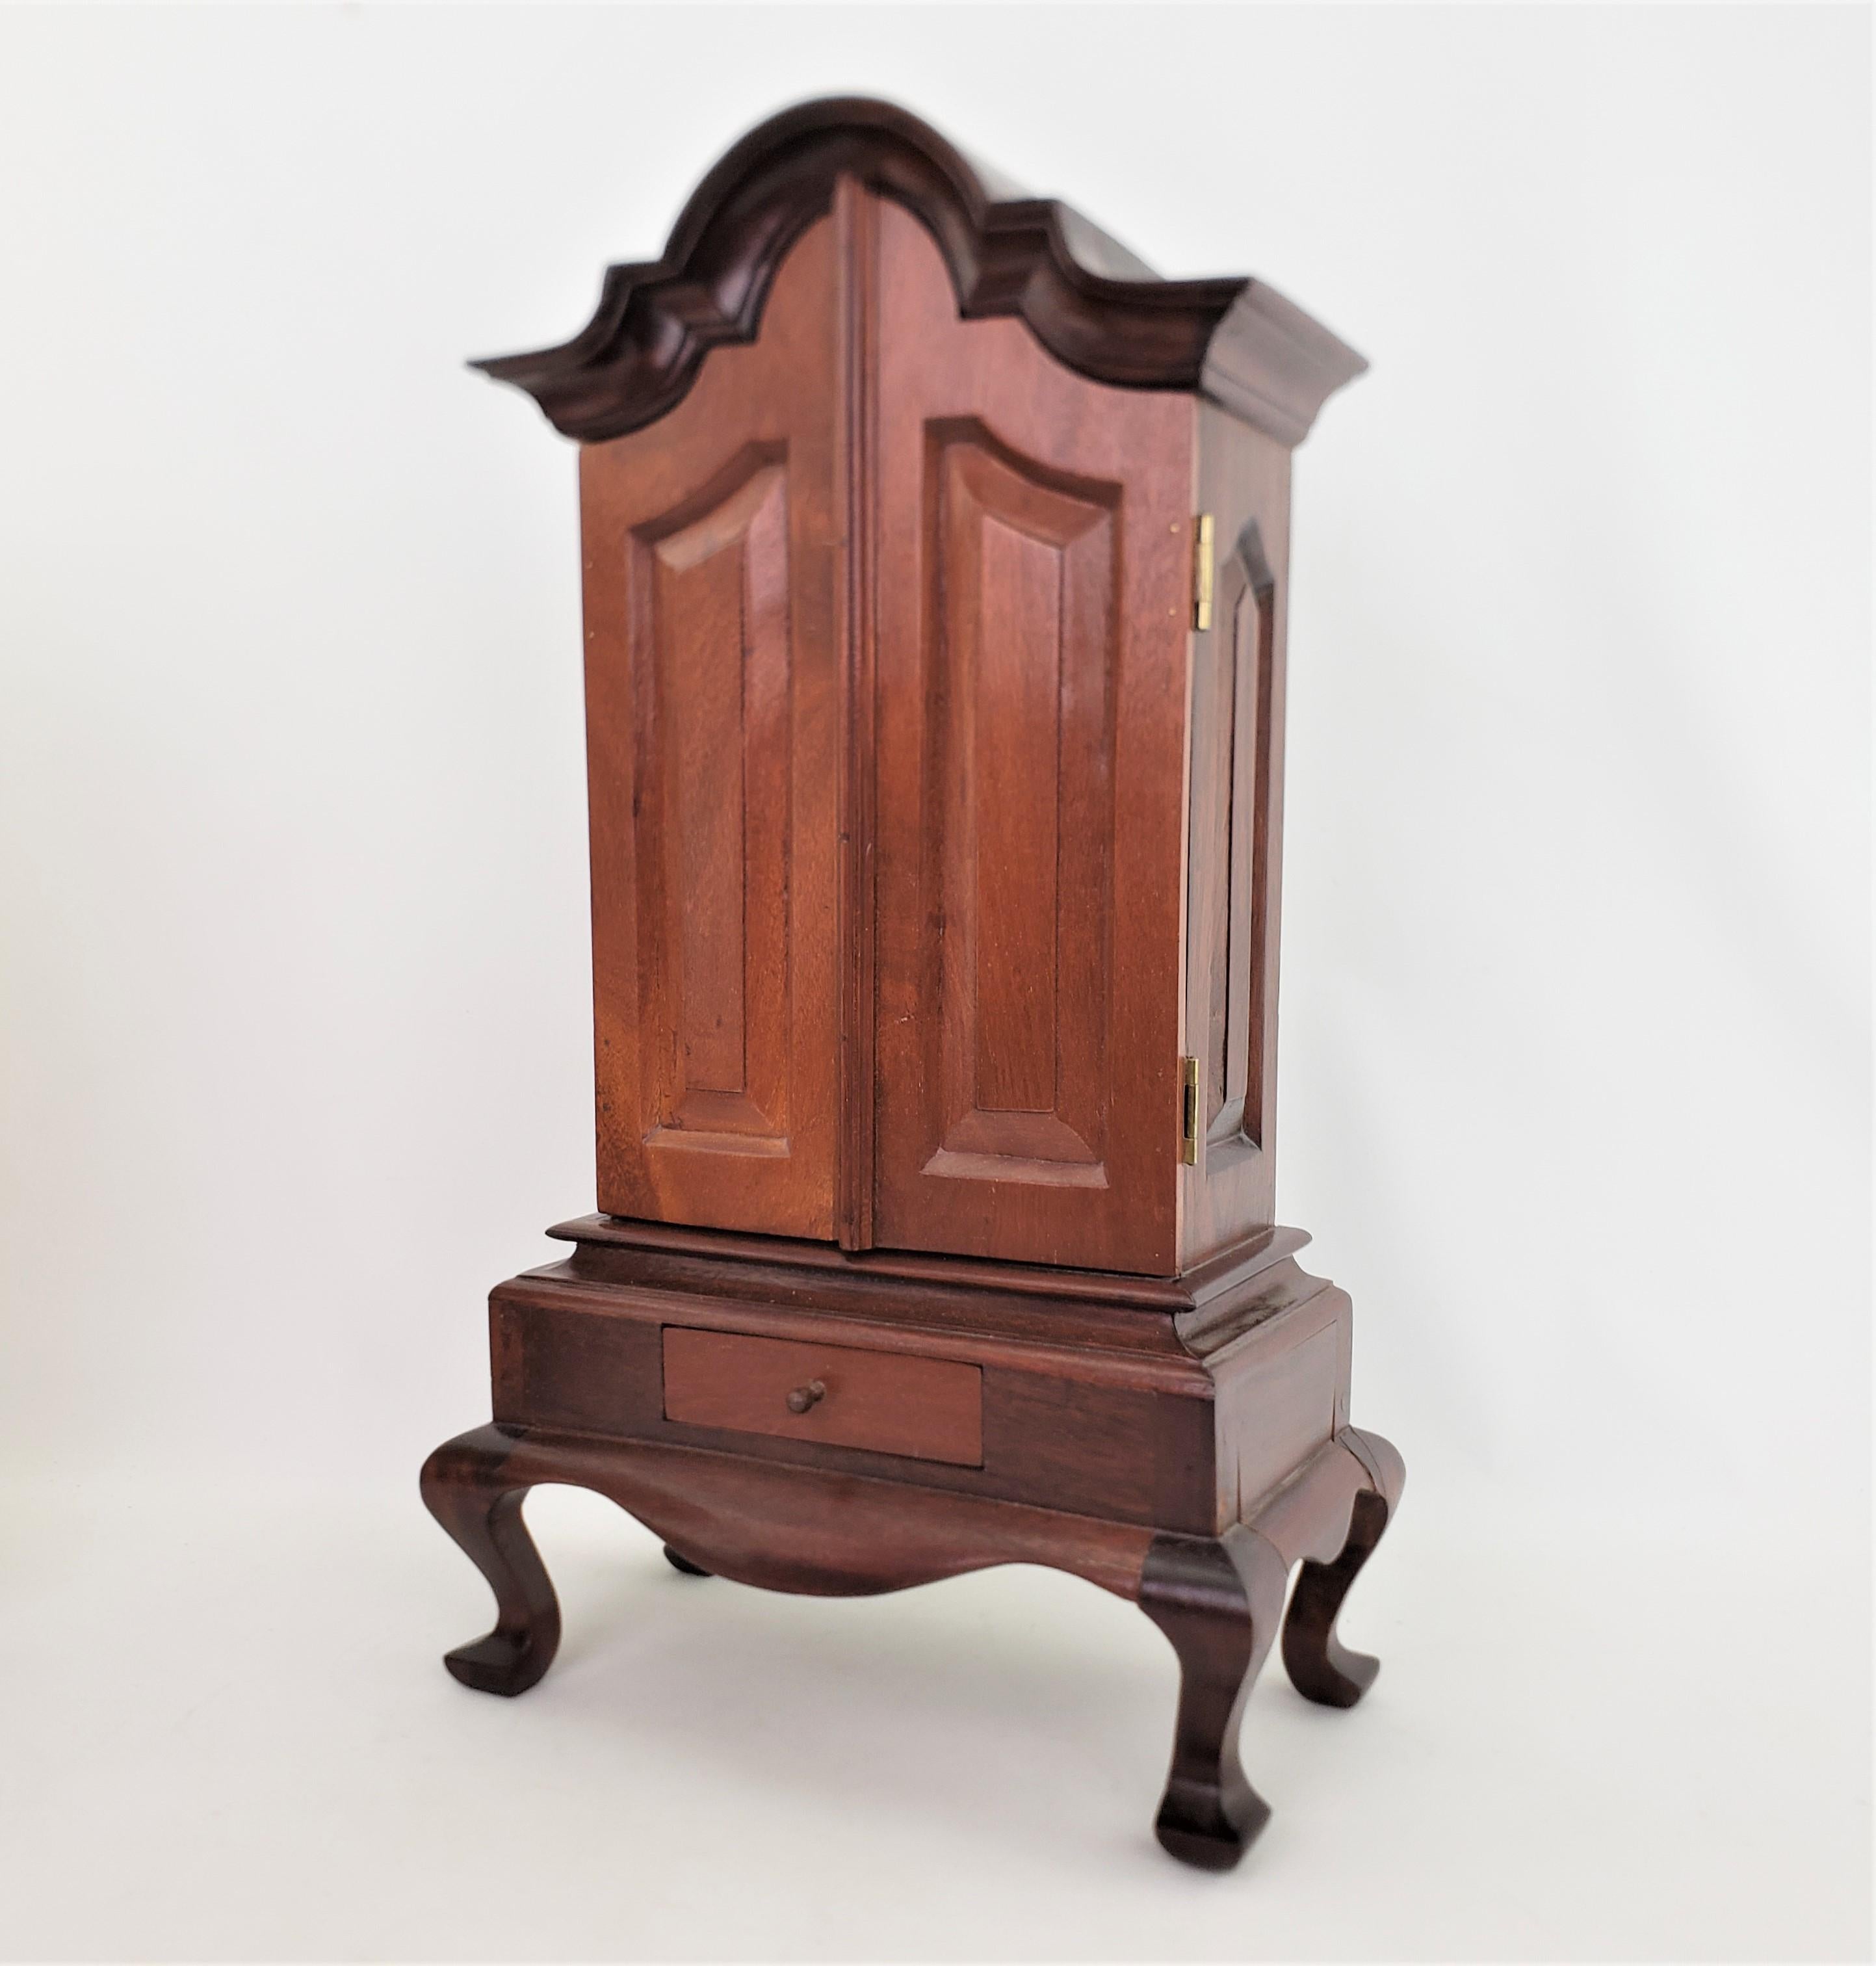 Ce meuble miniature en bois très bien exécuté n'est pas signé, mais on présume qu'il provient d'Angleterre et qu'il date d'environ 1940. Il a été réalisé dans un style Queen Anne. L'armoire est en noyer massif et possède un plateau serpentin